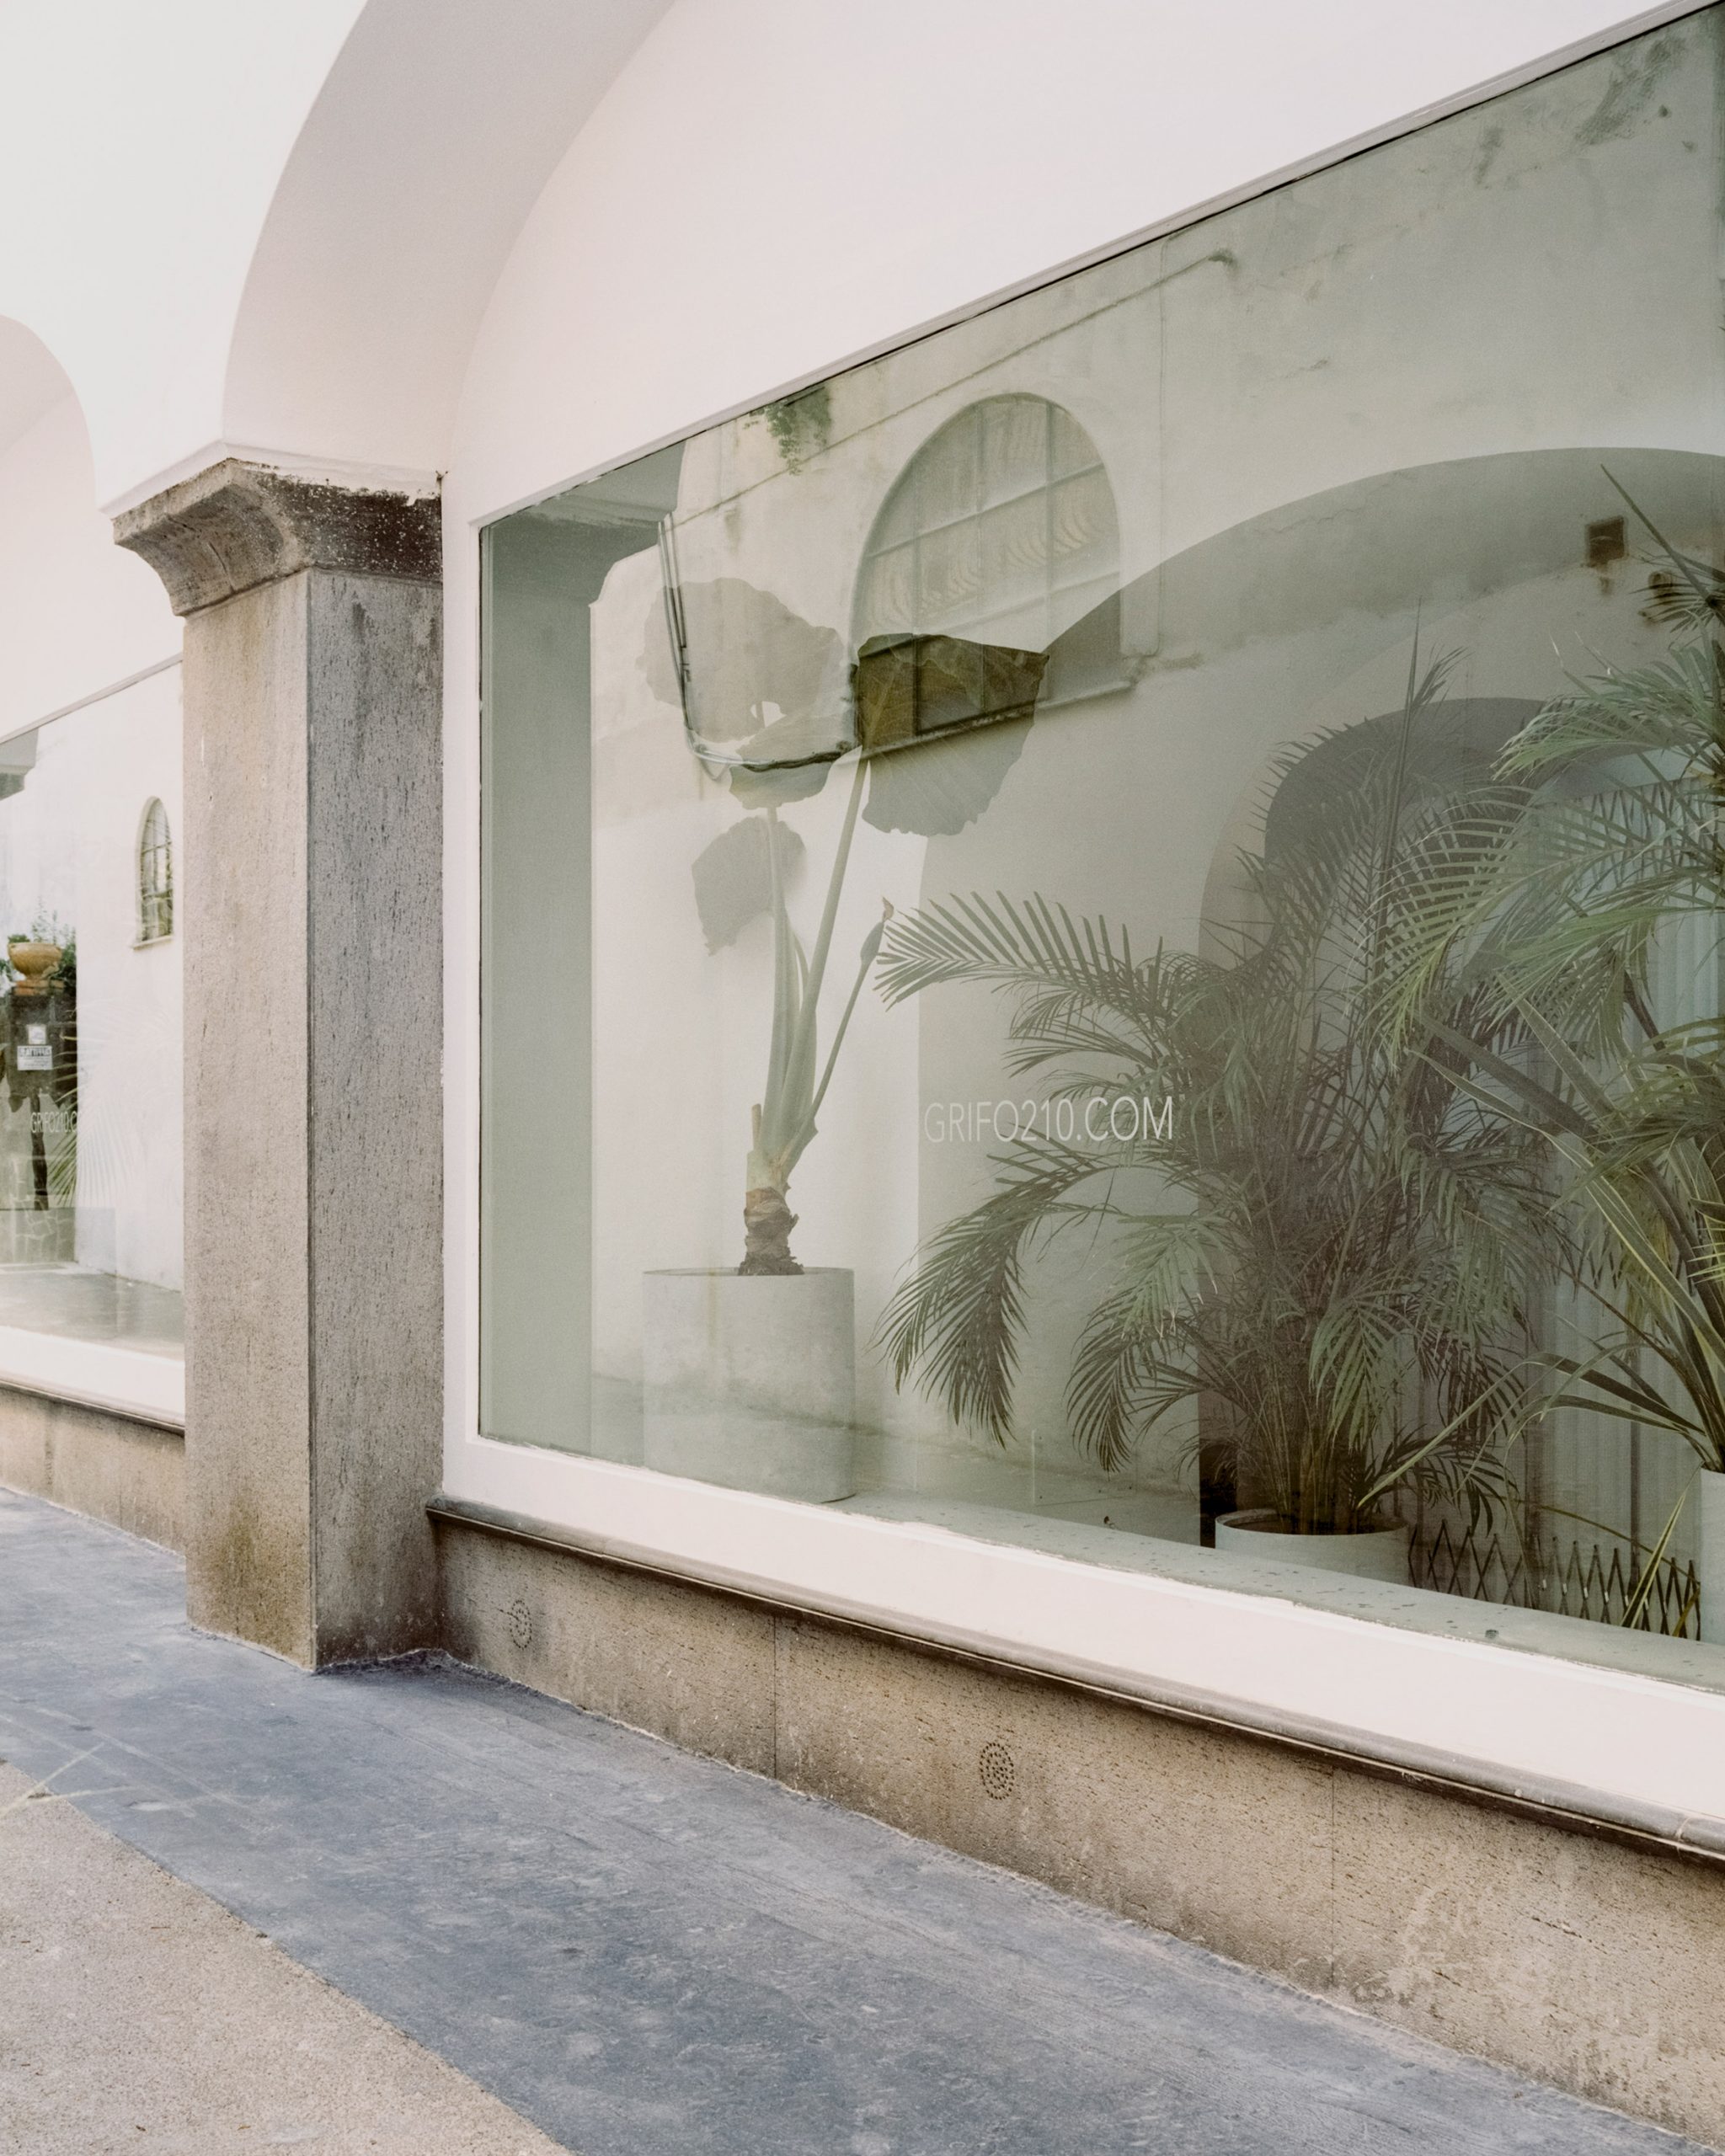 Shop window of Grifo210 boutique by Paritzki & Liani Architects